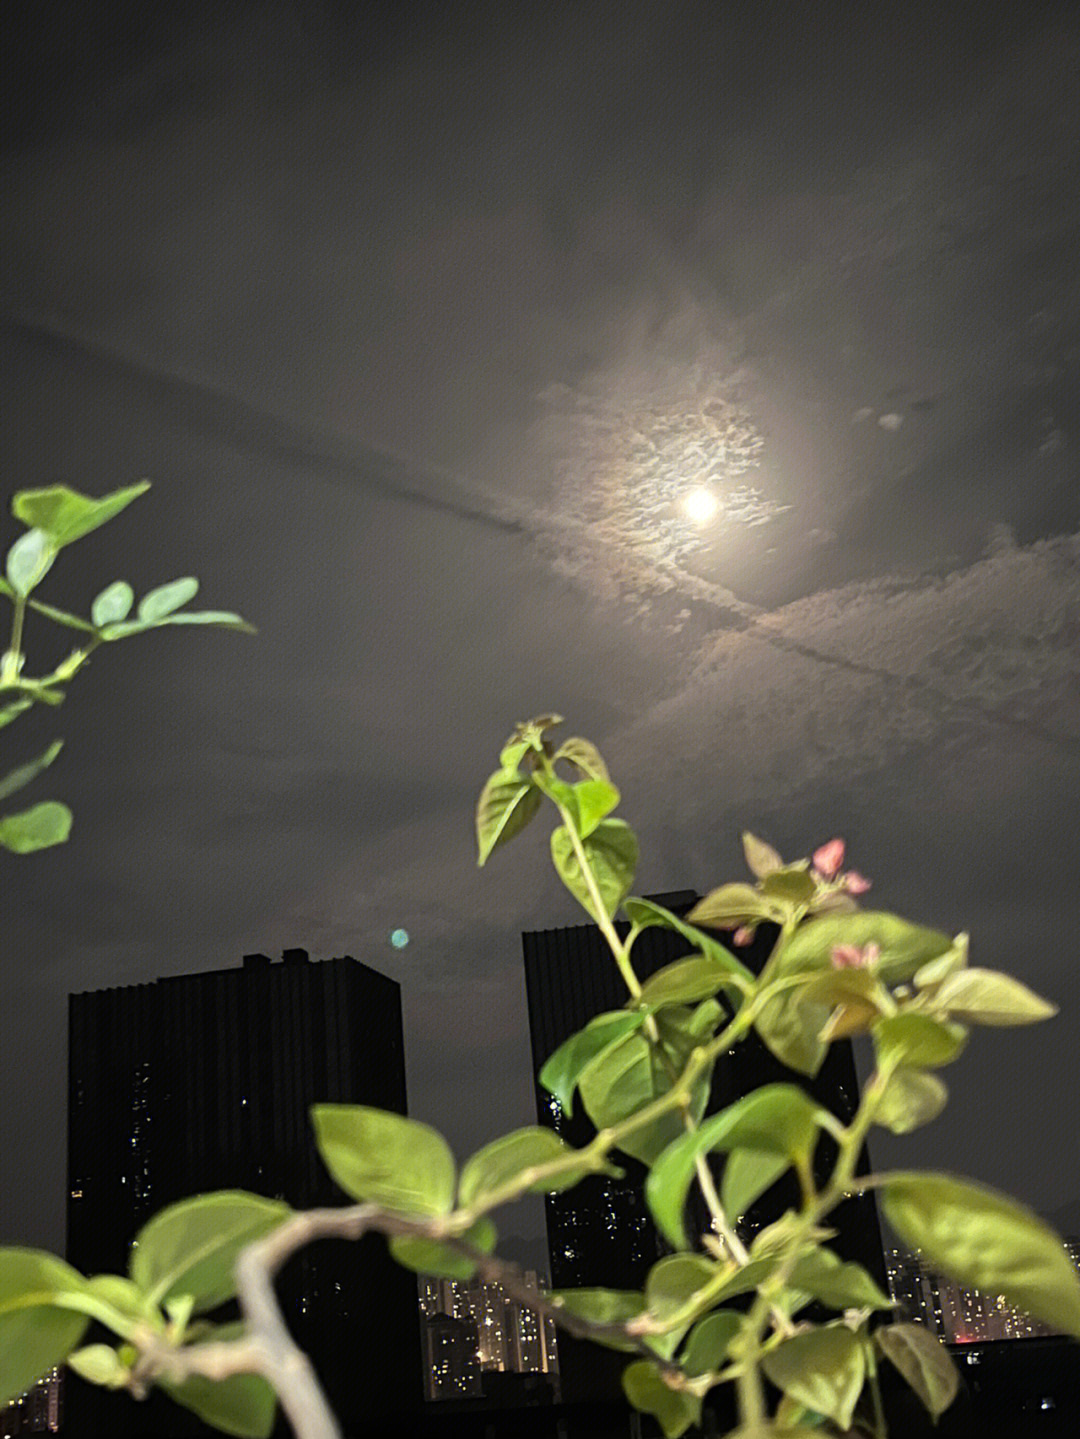 听说今晚有超级月亮,在阳台正好看见